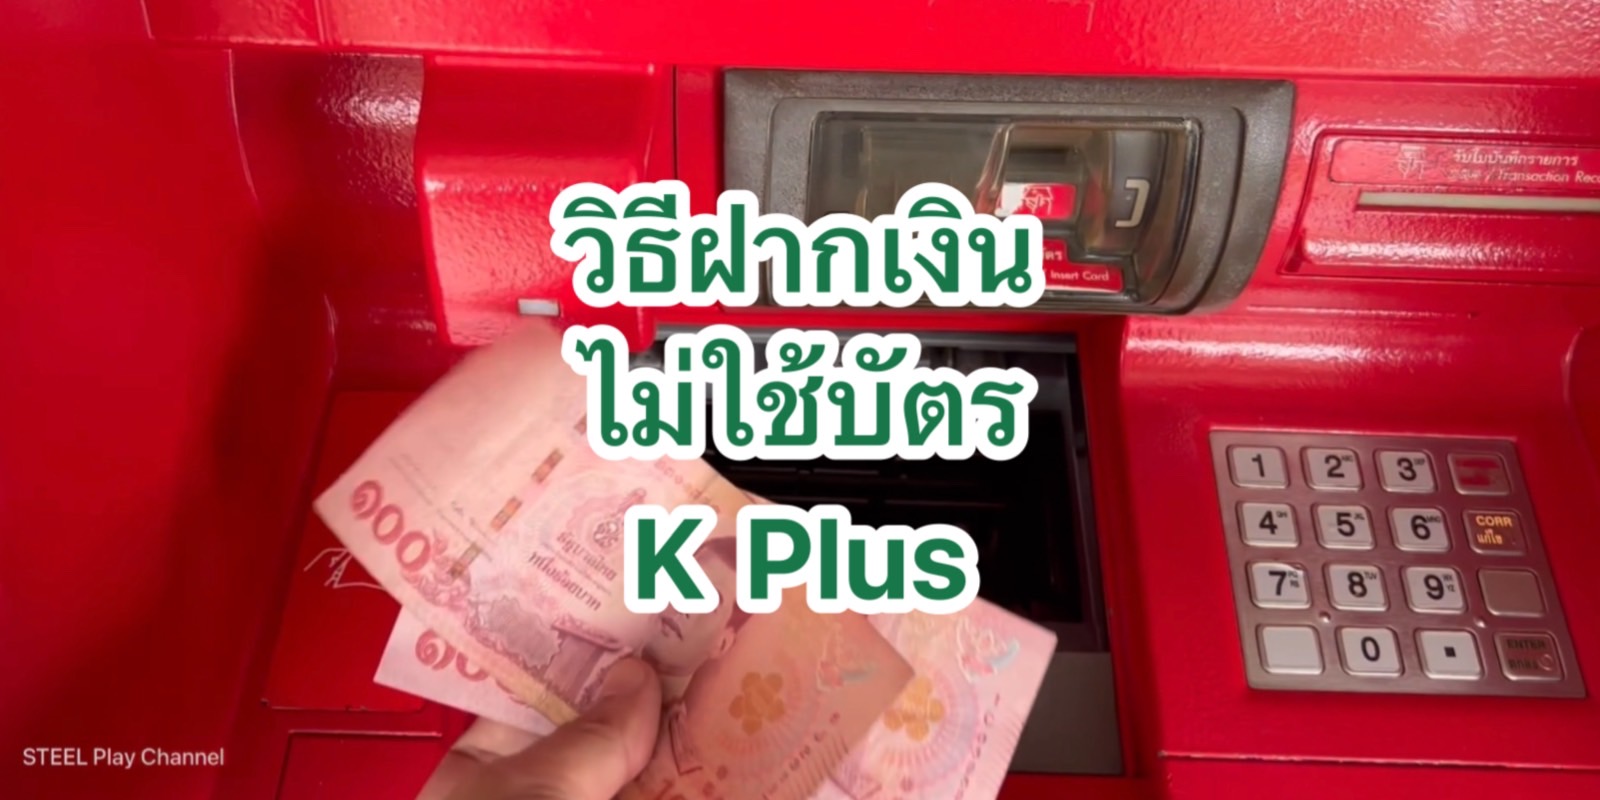 วิธีฝากเงินที่ตู้Atmเข้าบัญชีออนไลน์ K Plus กสิกรไทย ไม่ต้องใช้บัตร | 2565  | Steel Play Channel | Trueid Creator